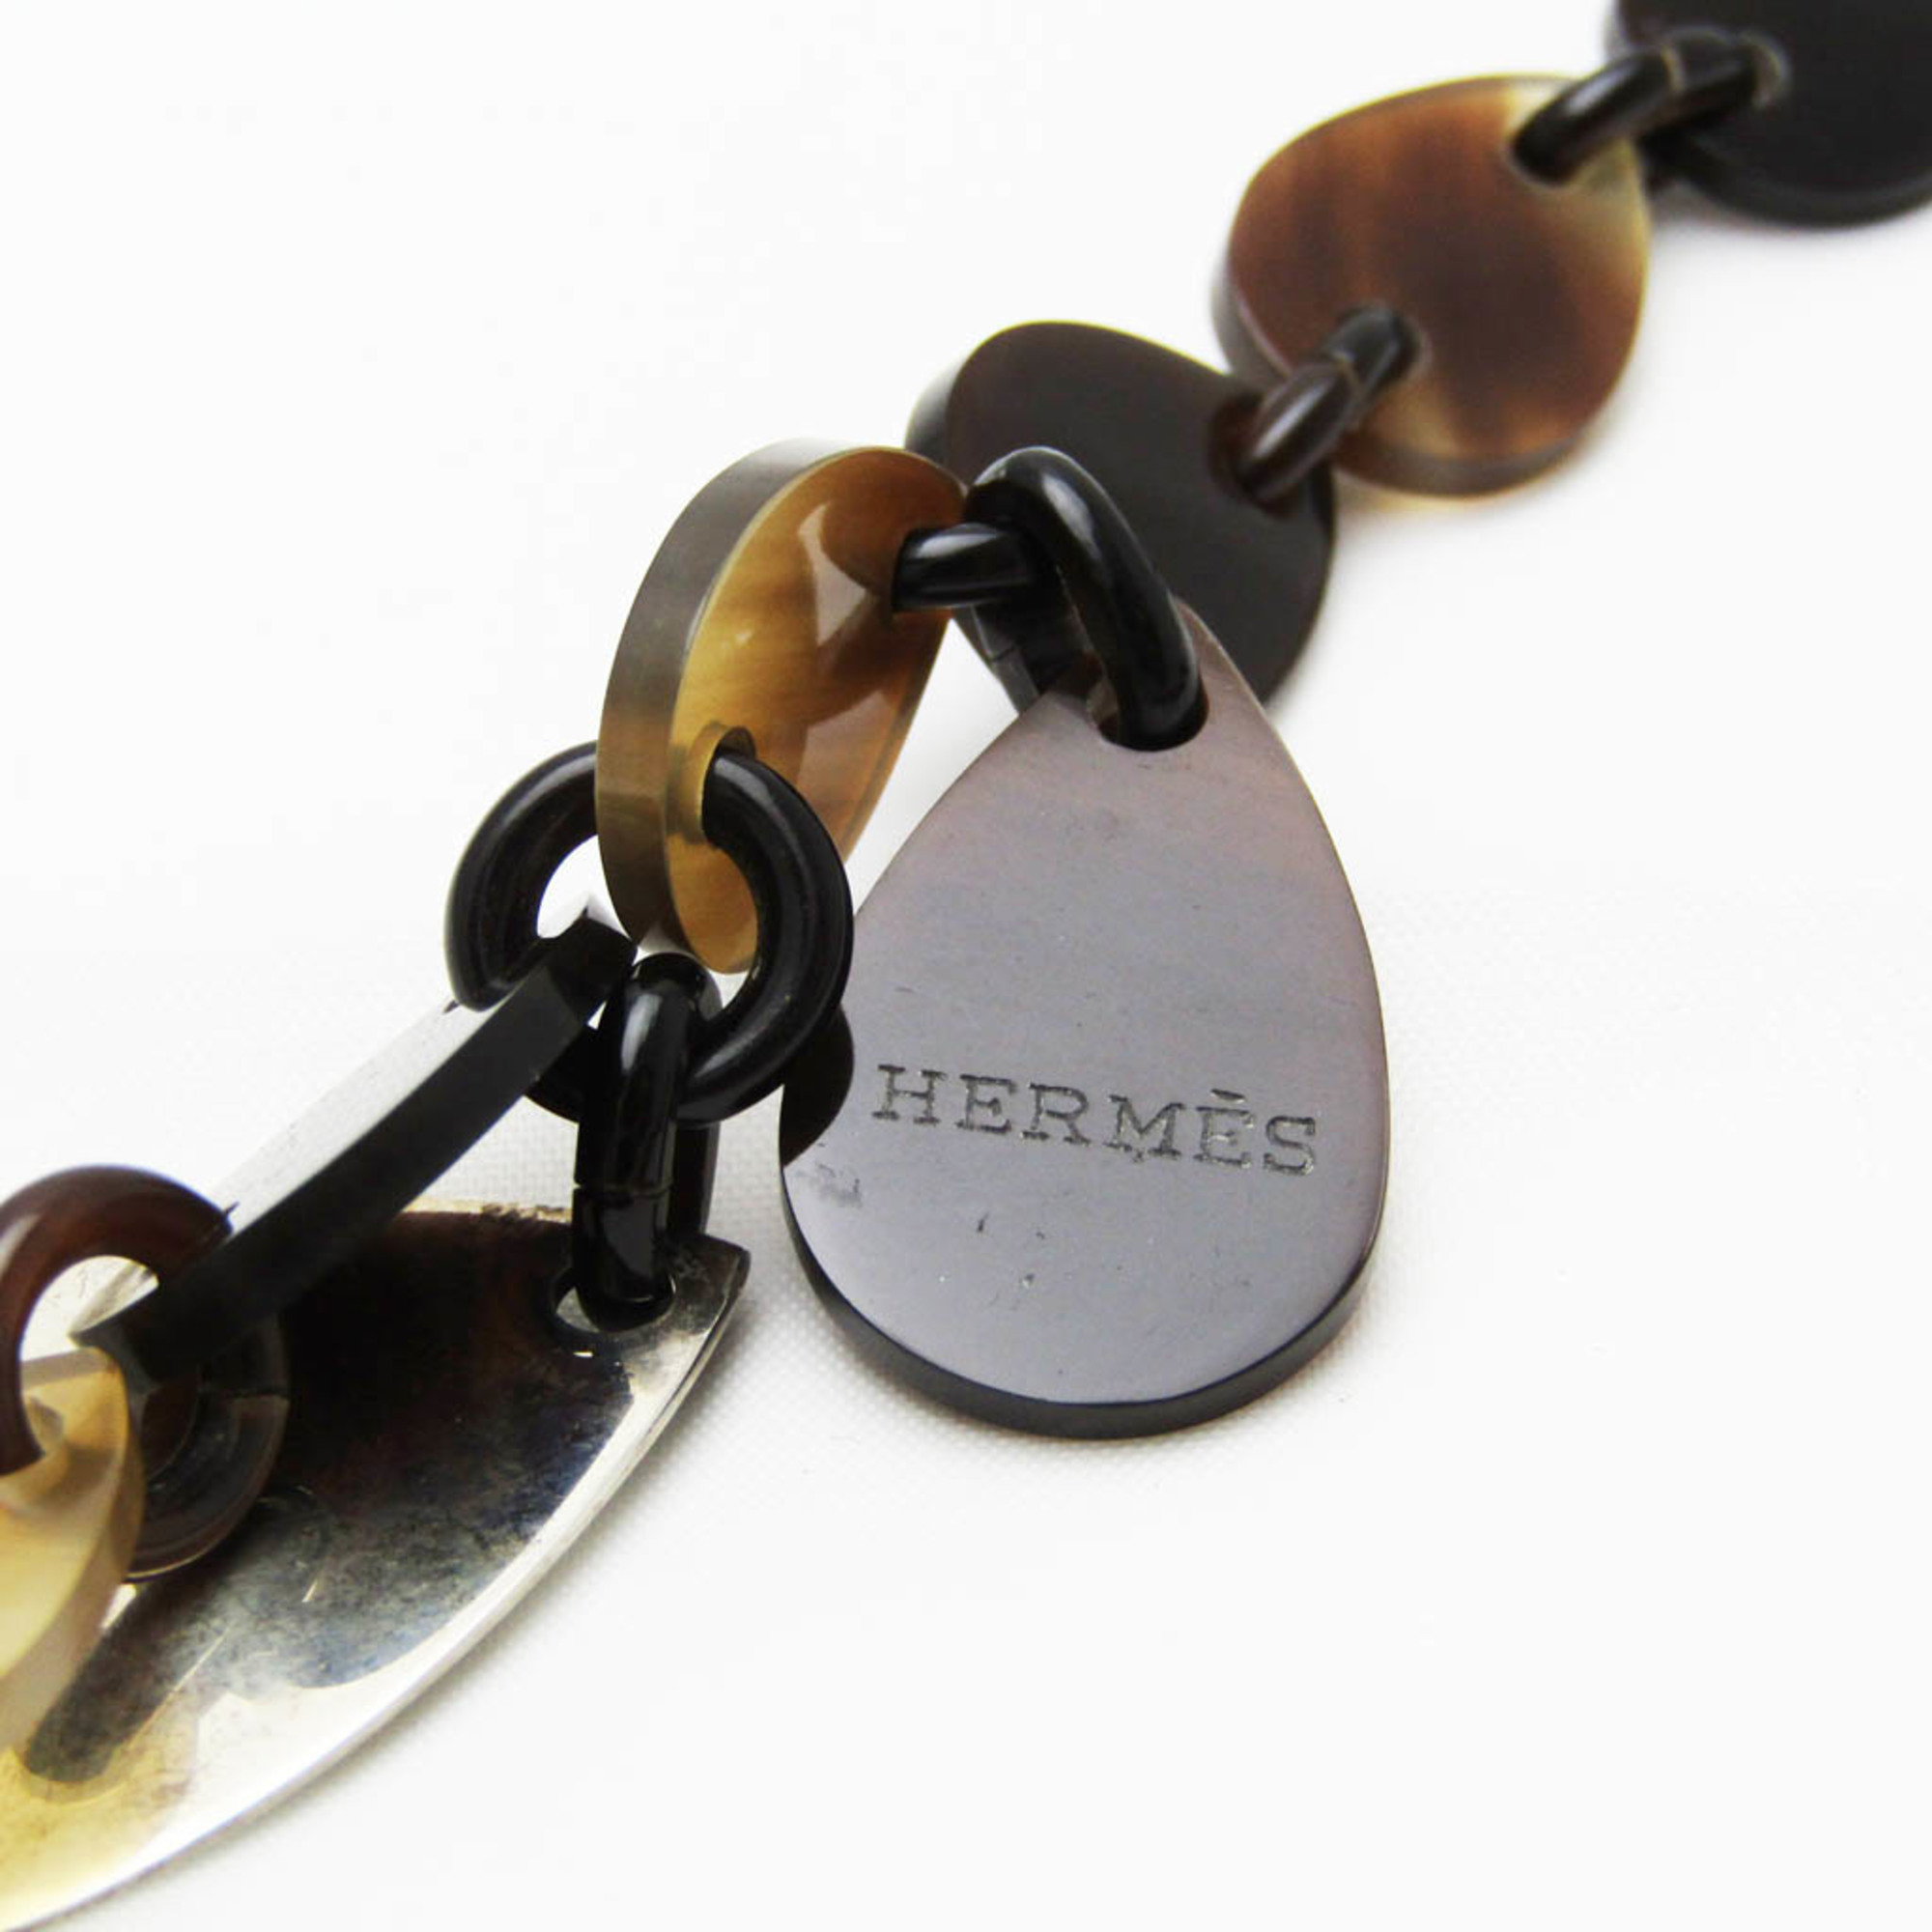 Hermes Buffalo Horn,Silver 925 Women's Necklace (Beige,Dark Brown,Silver)